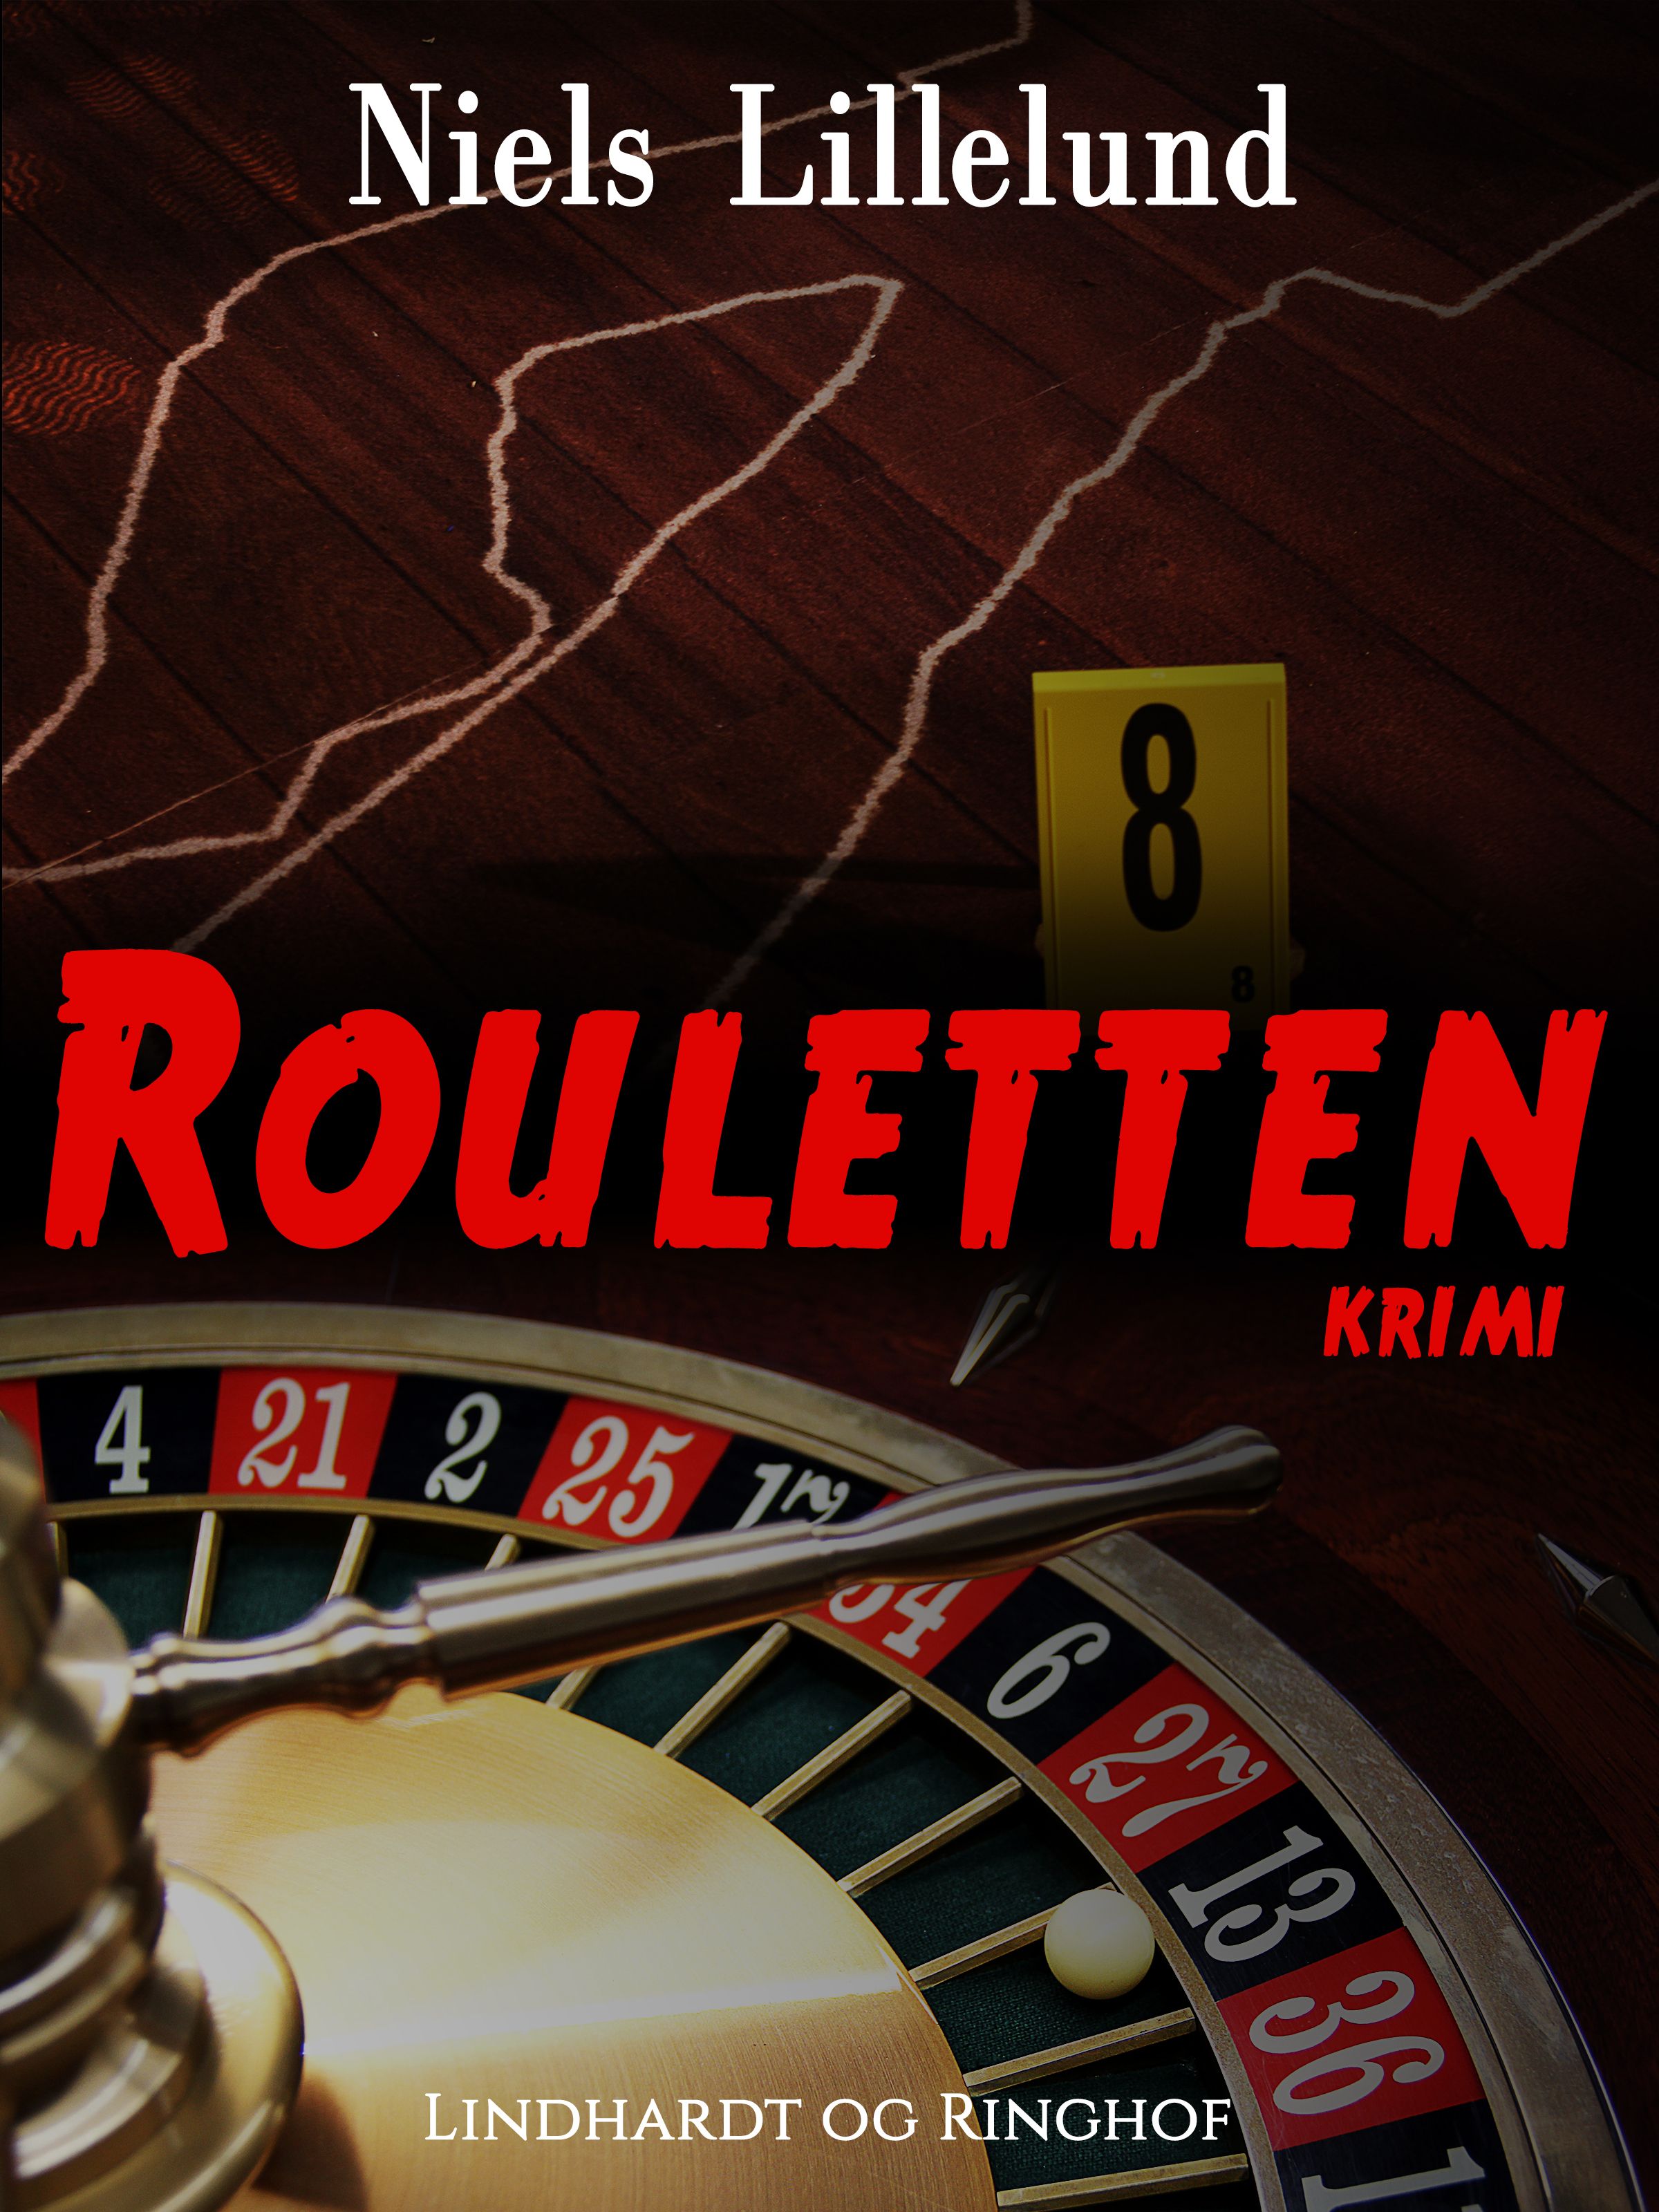 Rouletten, e-bok av Niels Lillelund